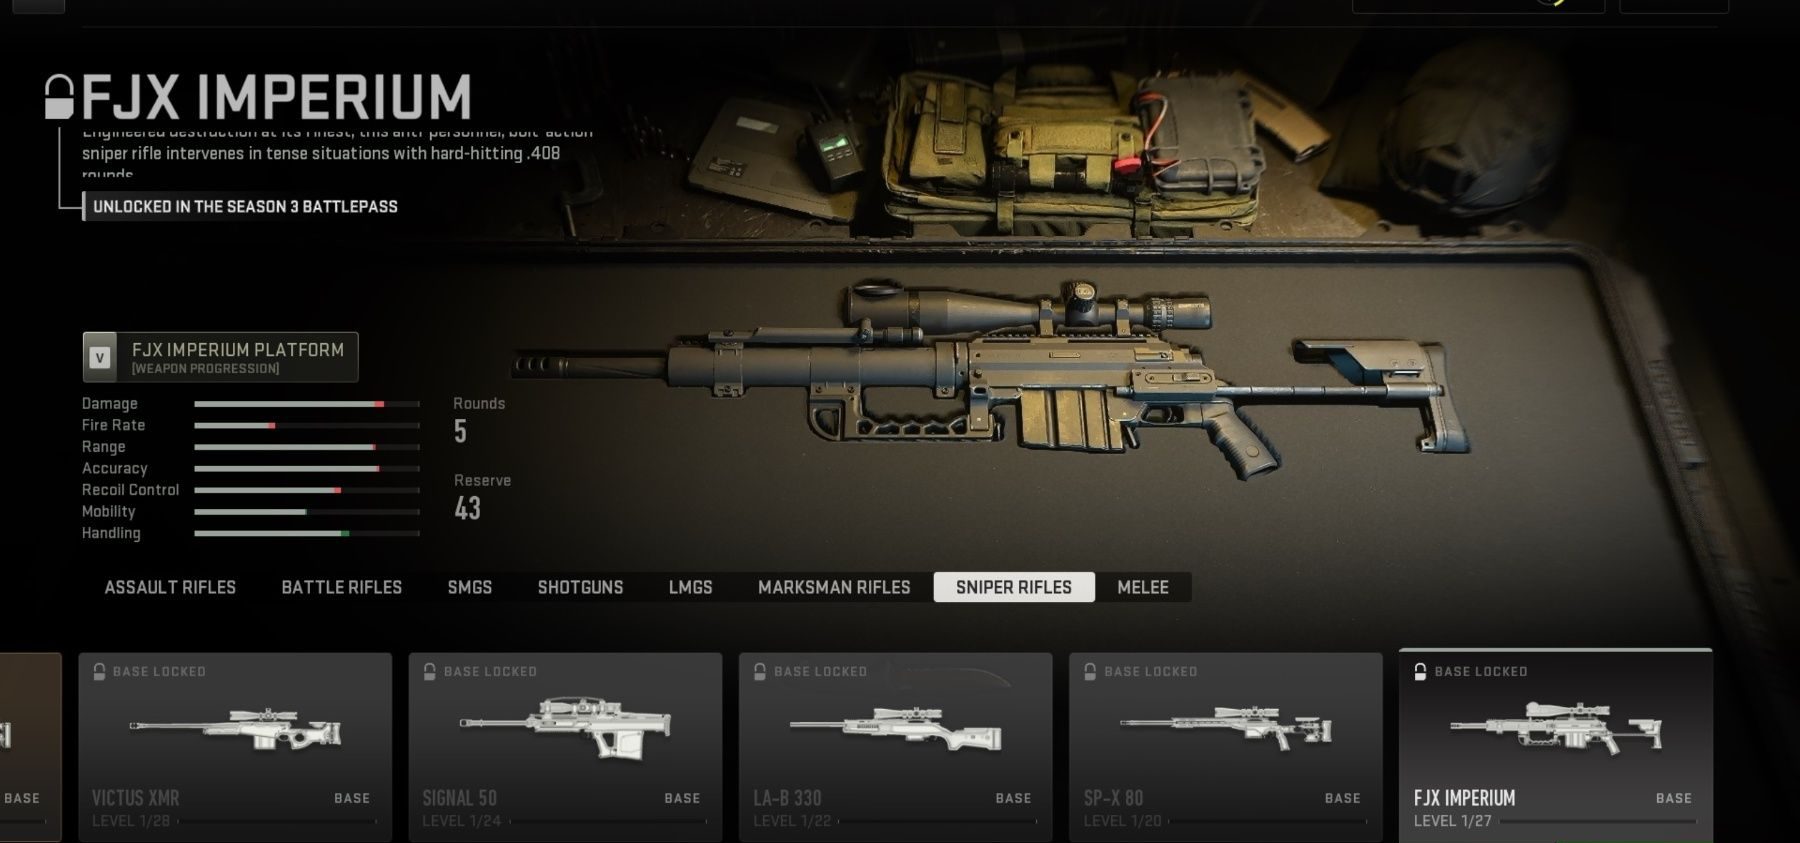 A sniper in a case in Call of Duty: Modern Warfare 3.